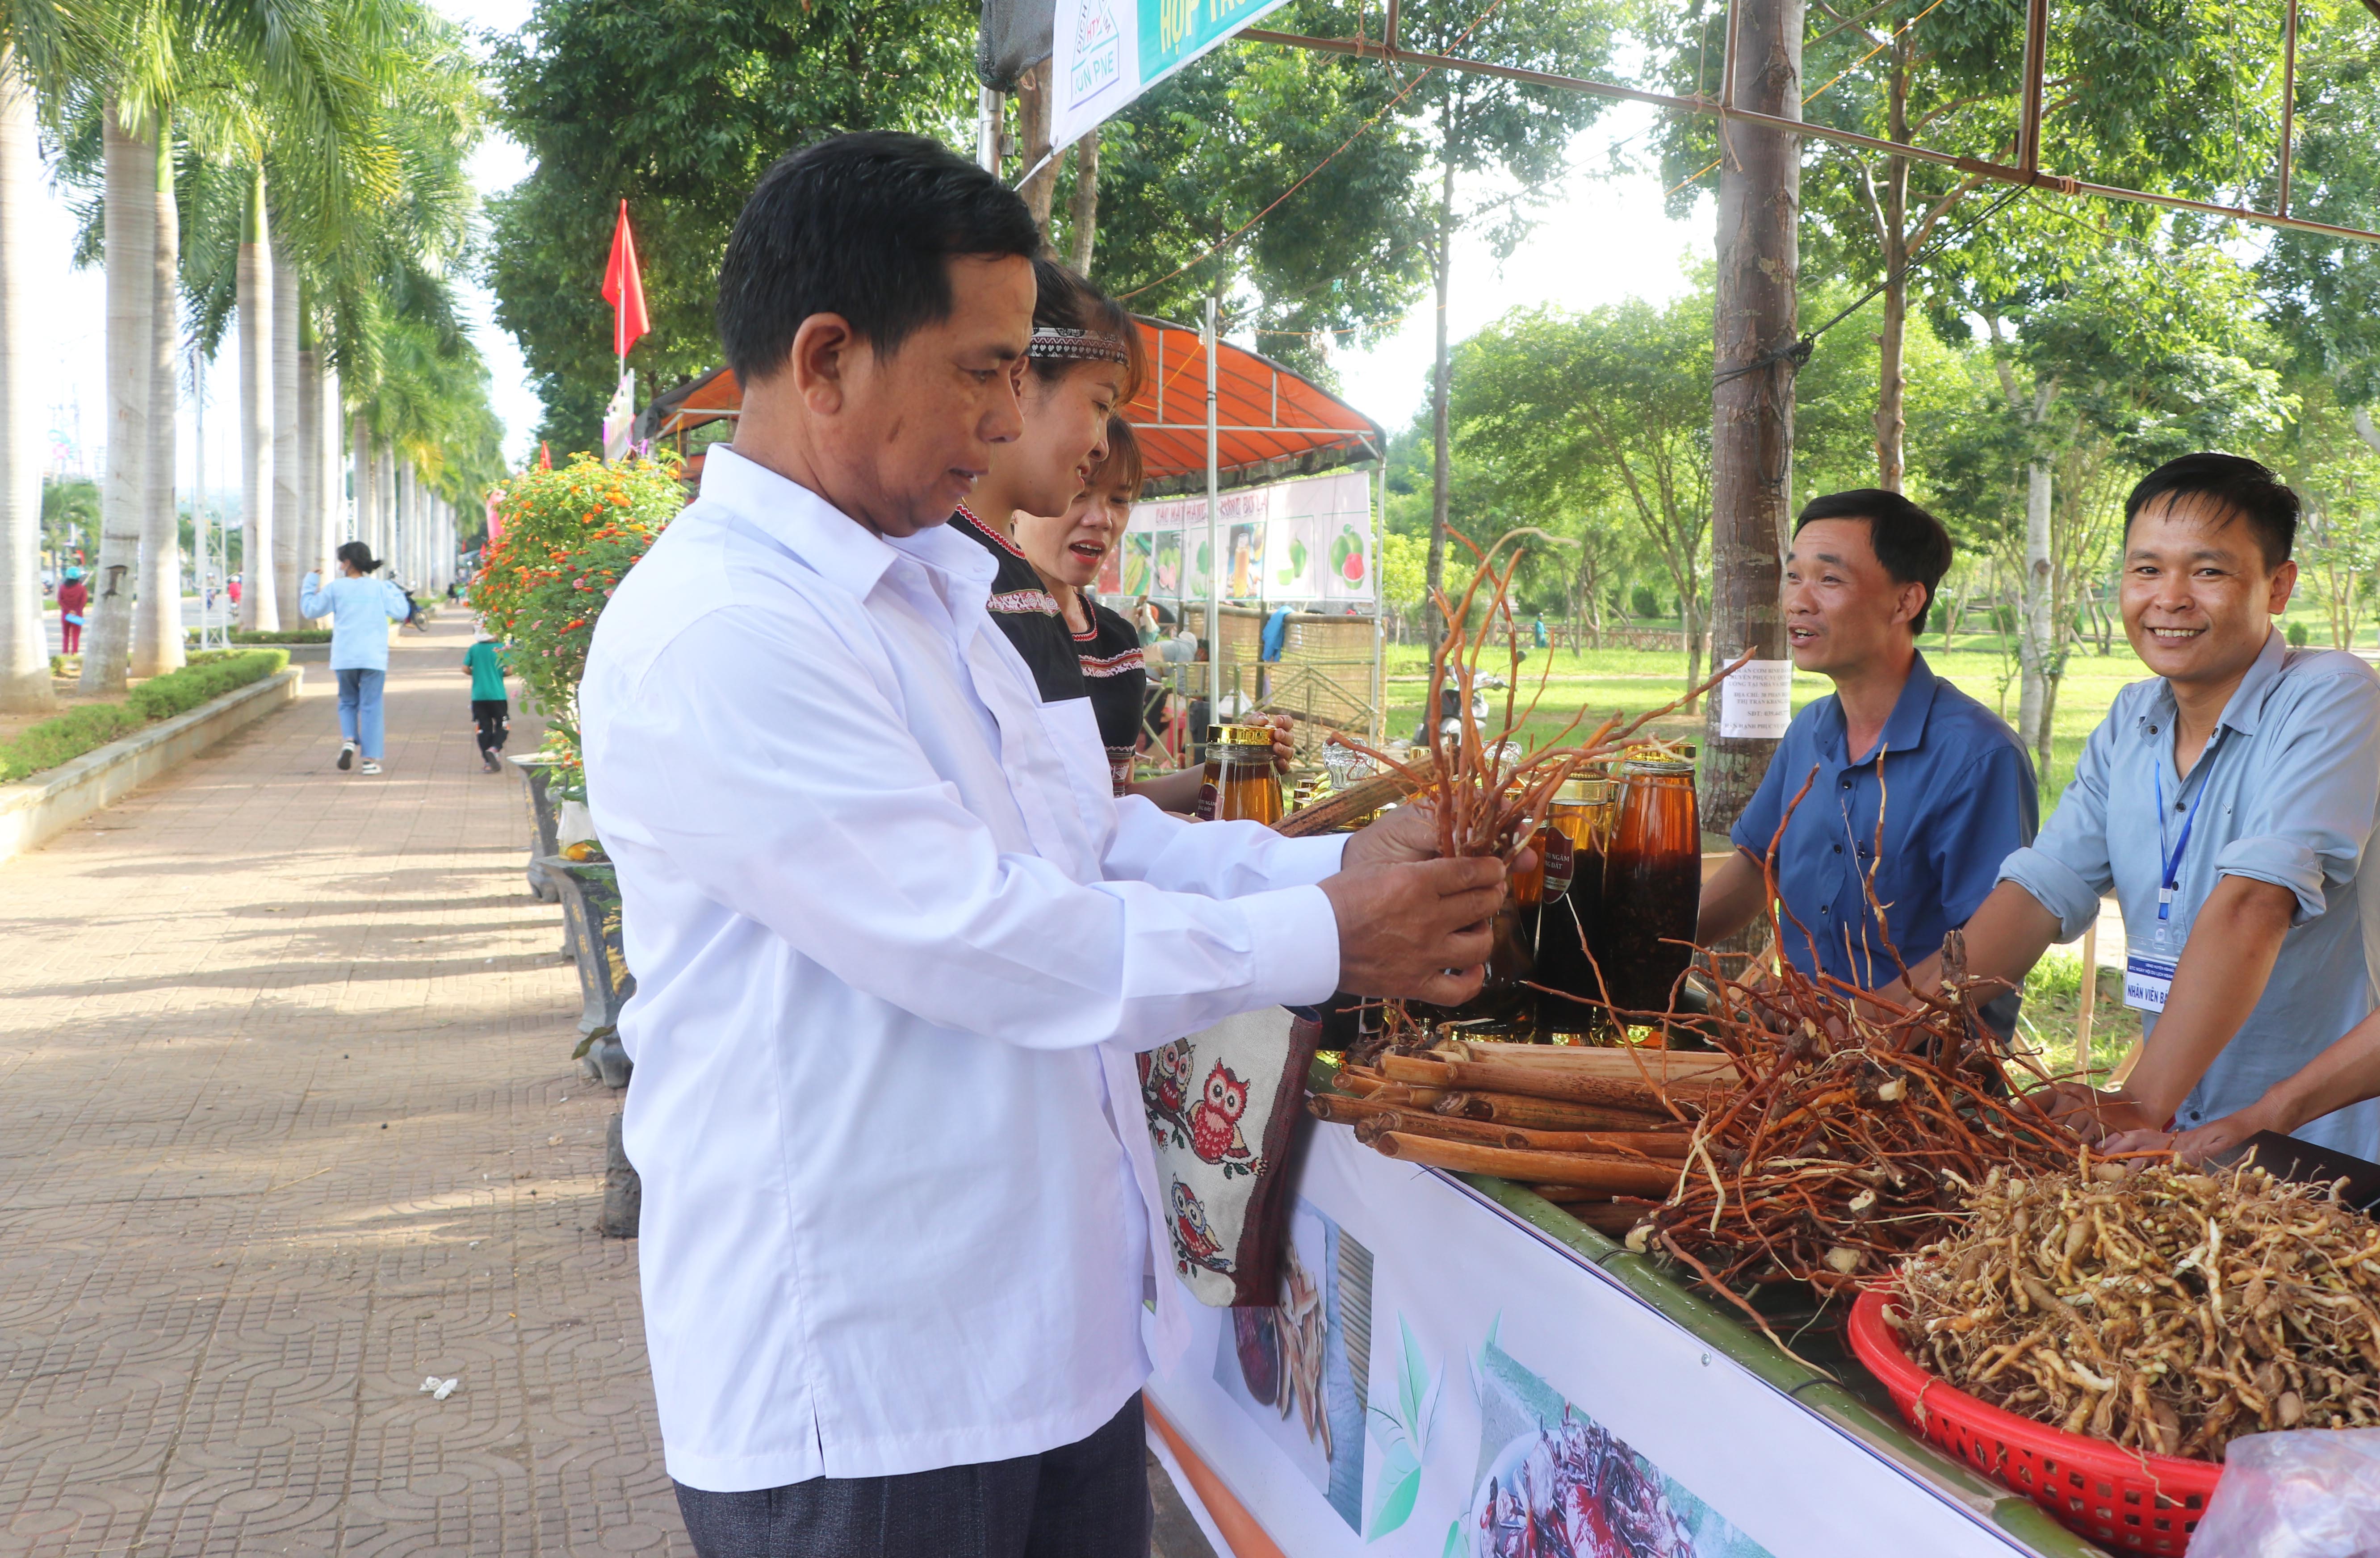 Các sản phẩm dược liệu, sâm, nấm linh chi được người dân bày bán tại Ngày hội du lịch huyện Kbang năm 2022, góp phần đa dạng hóa sản phẩm, đáp ứng nhu cầu tiêu dùng của khách du lịch. Ảnh: Ngọc Minh 